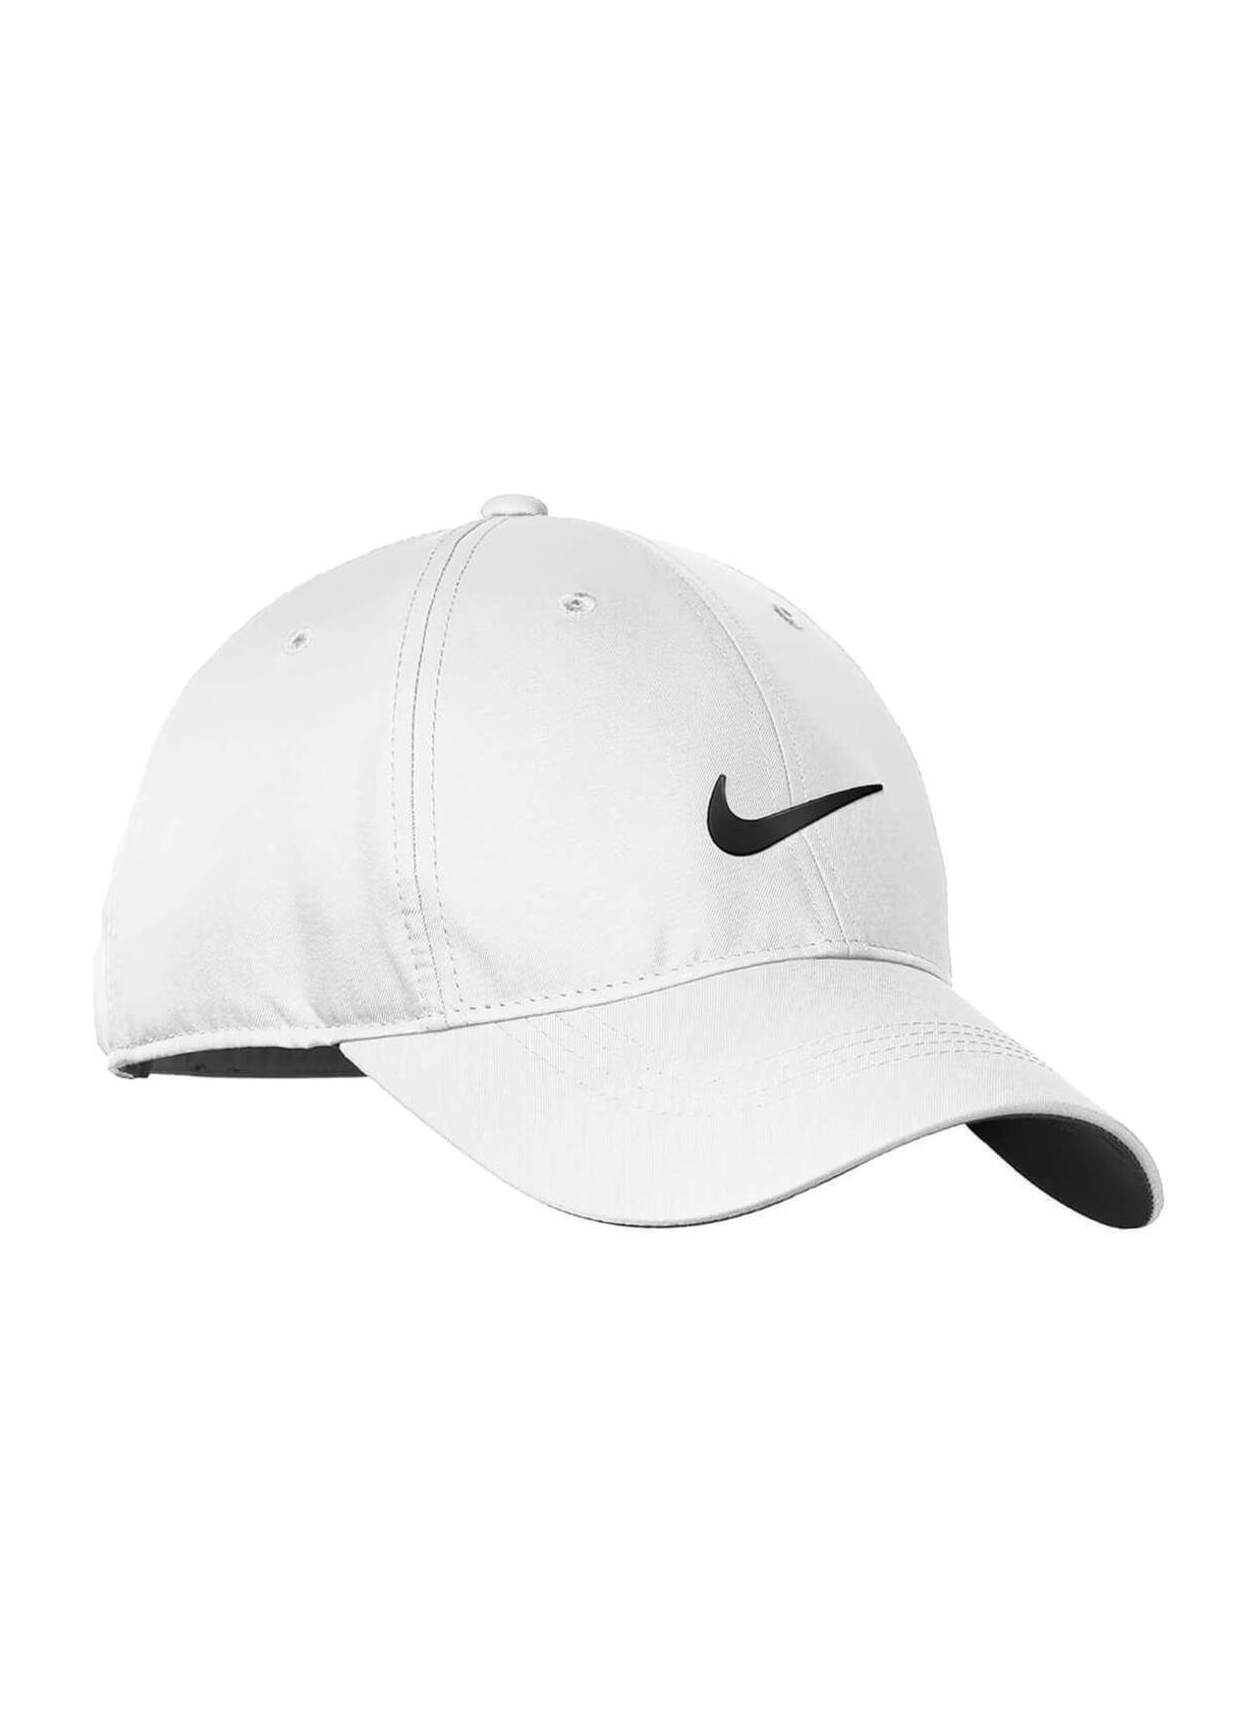 White / Black Nike Dri-FIT Swoosh Front Hat | Nike